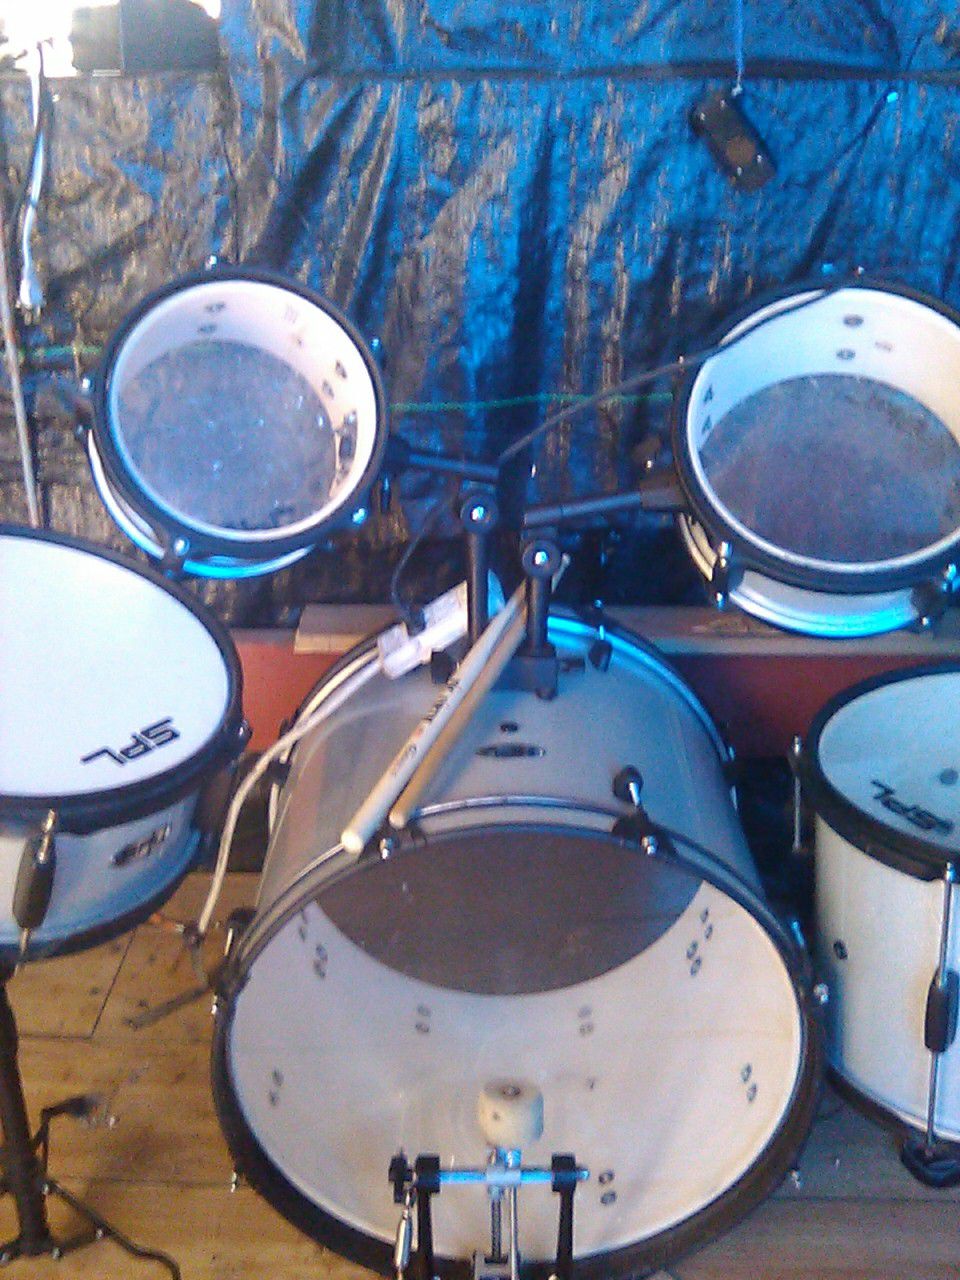 Spl junior drum set